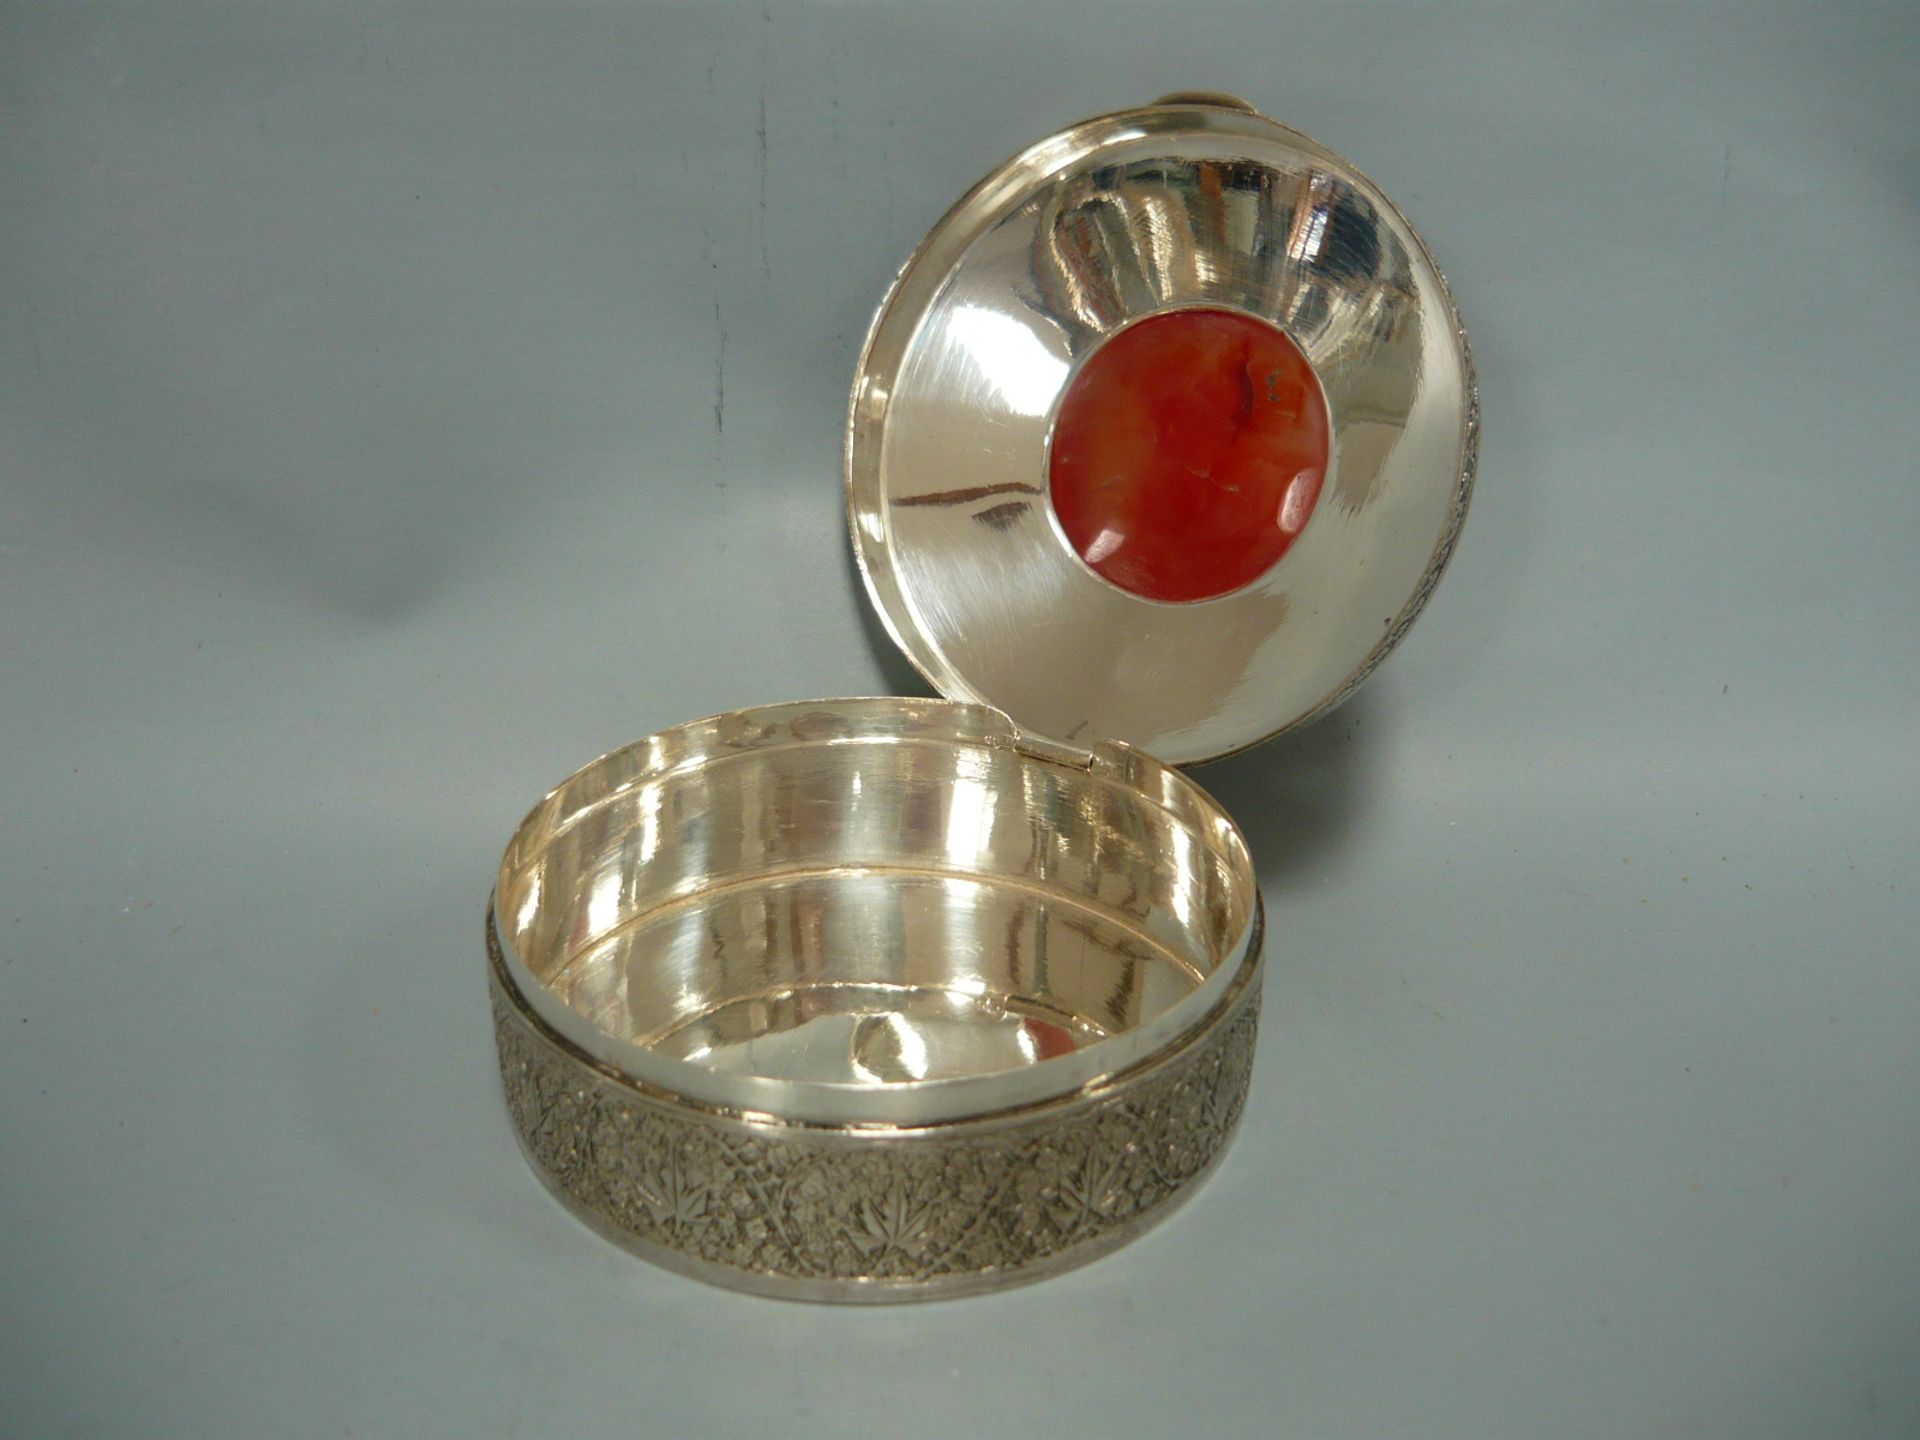 Sammelwürdige Silberdose mit eingesetztem Karneol. Silber über 750er). Ø 8cm, H. 4,5cm. - Image 3 of 3